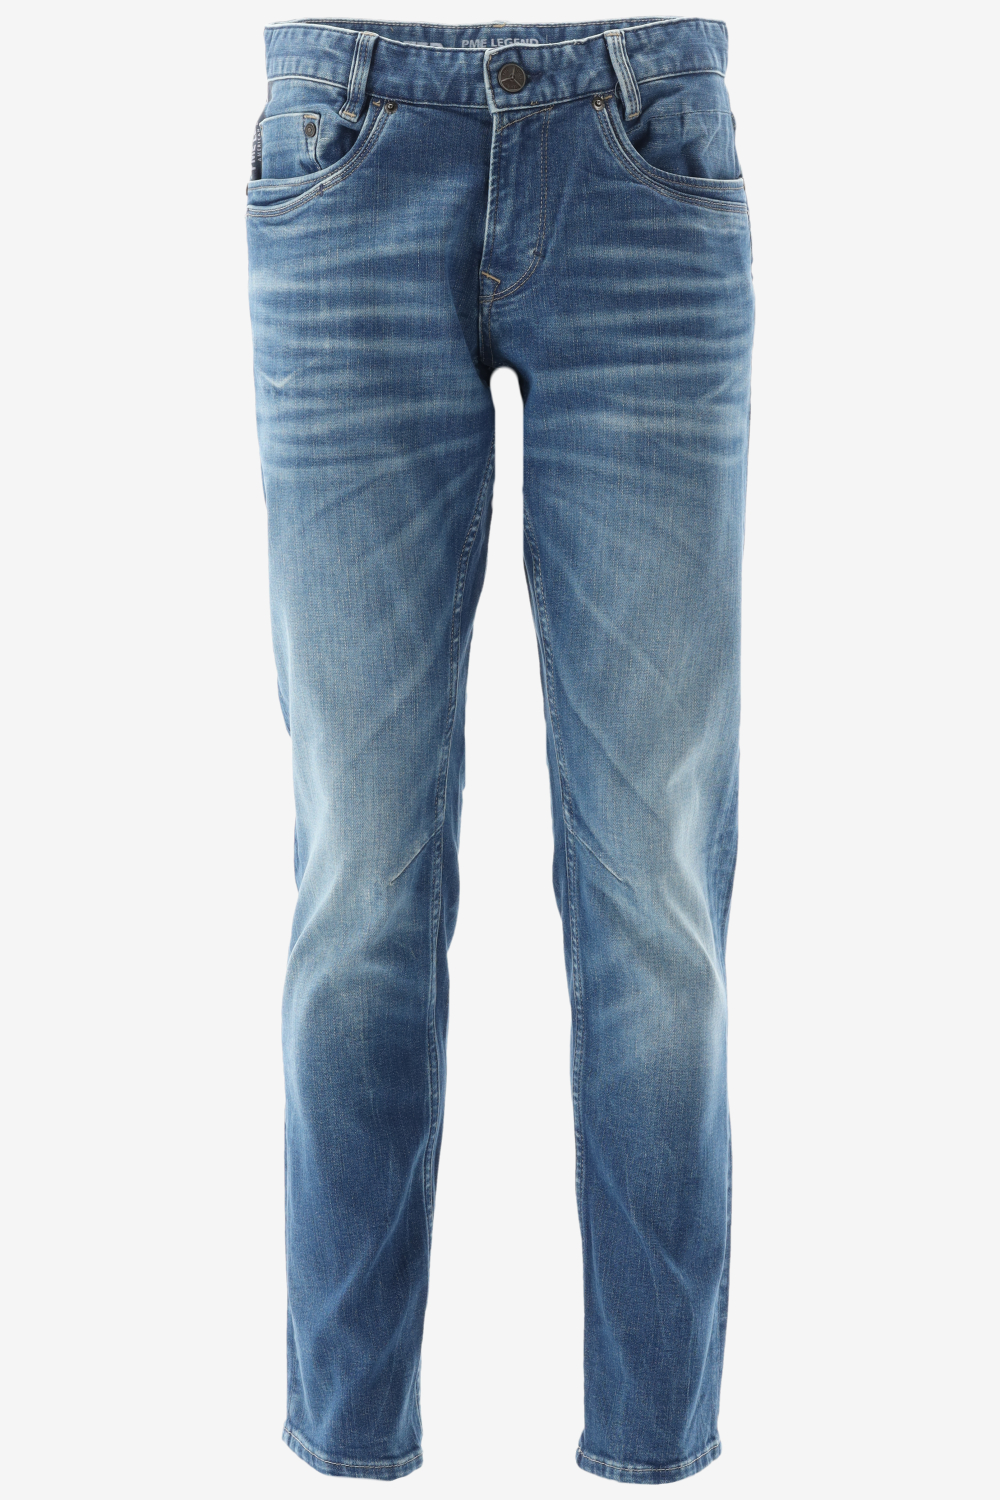 PME Legend - Skymaster Jeans Blauw - W 31 - L 30 - Regular-fit